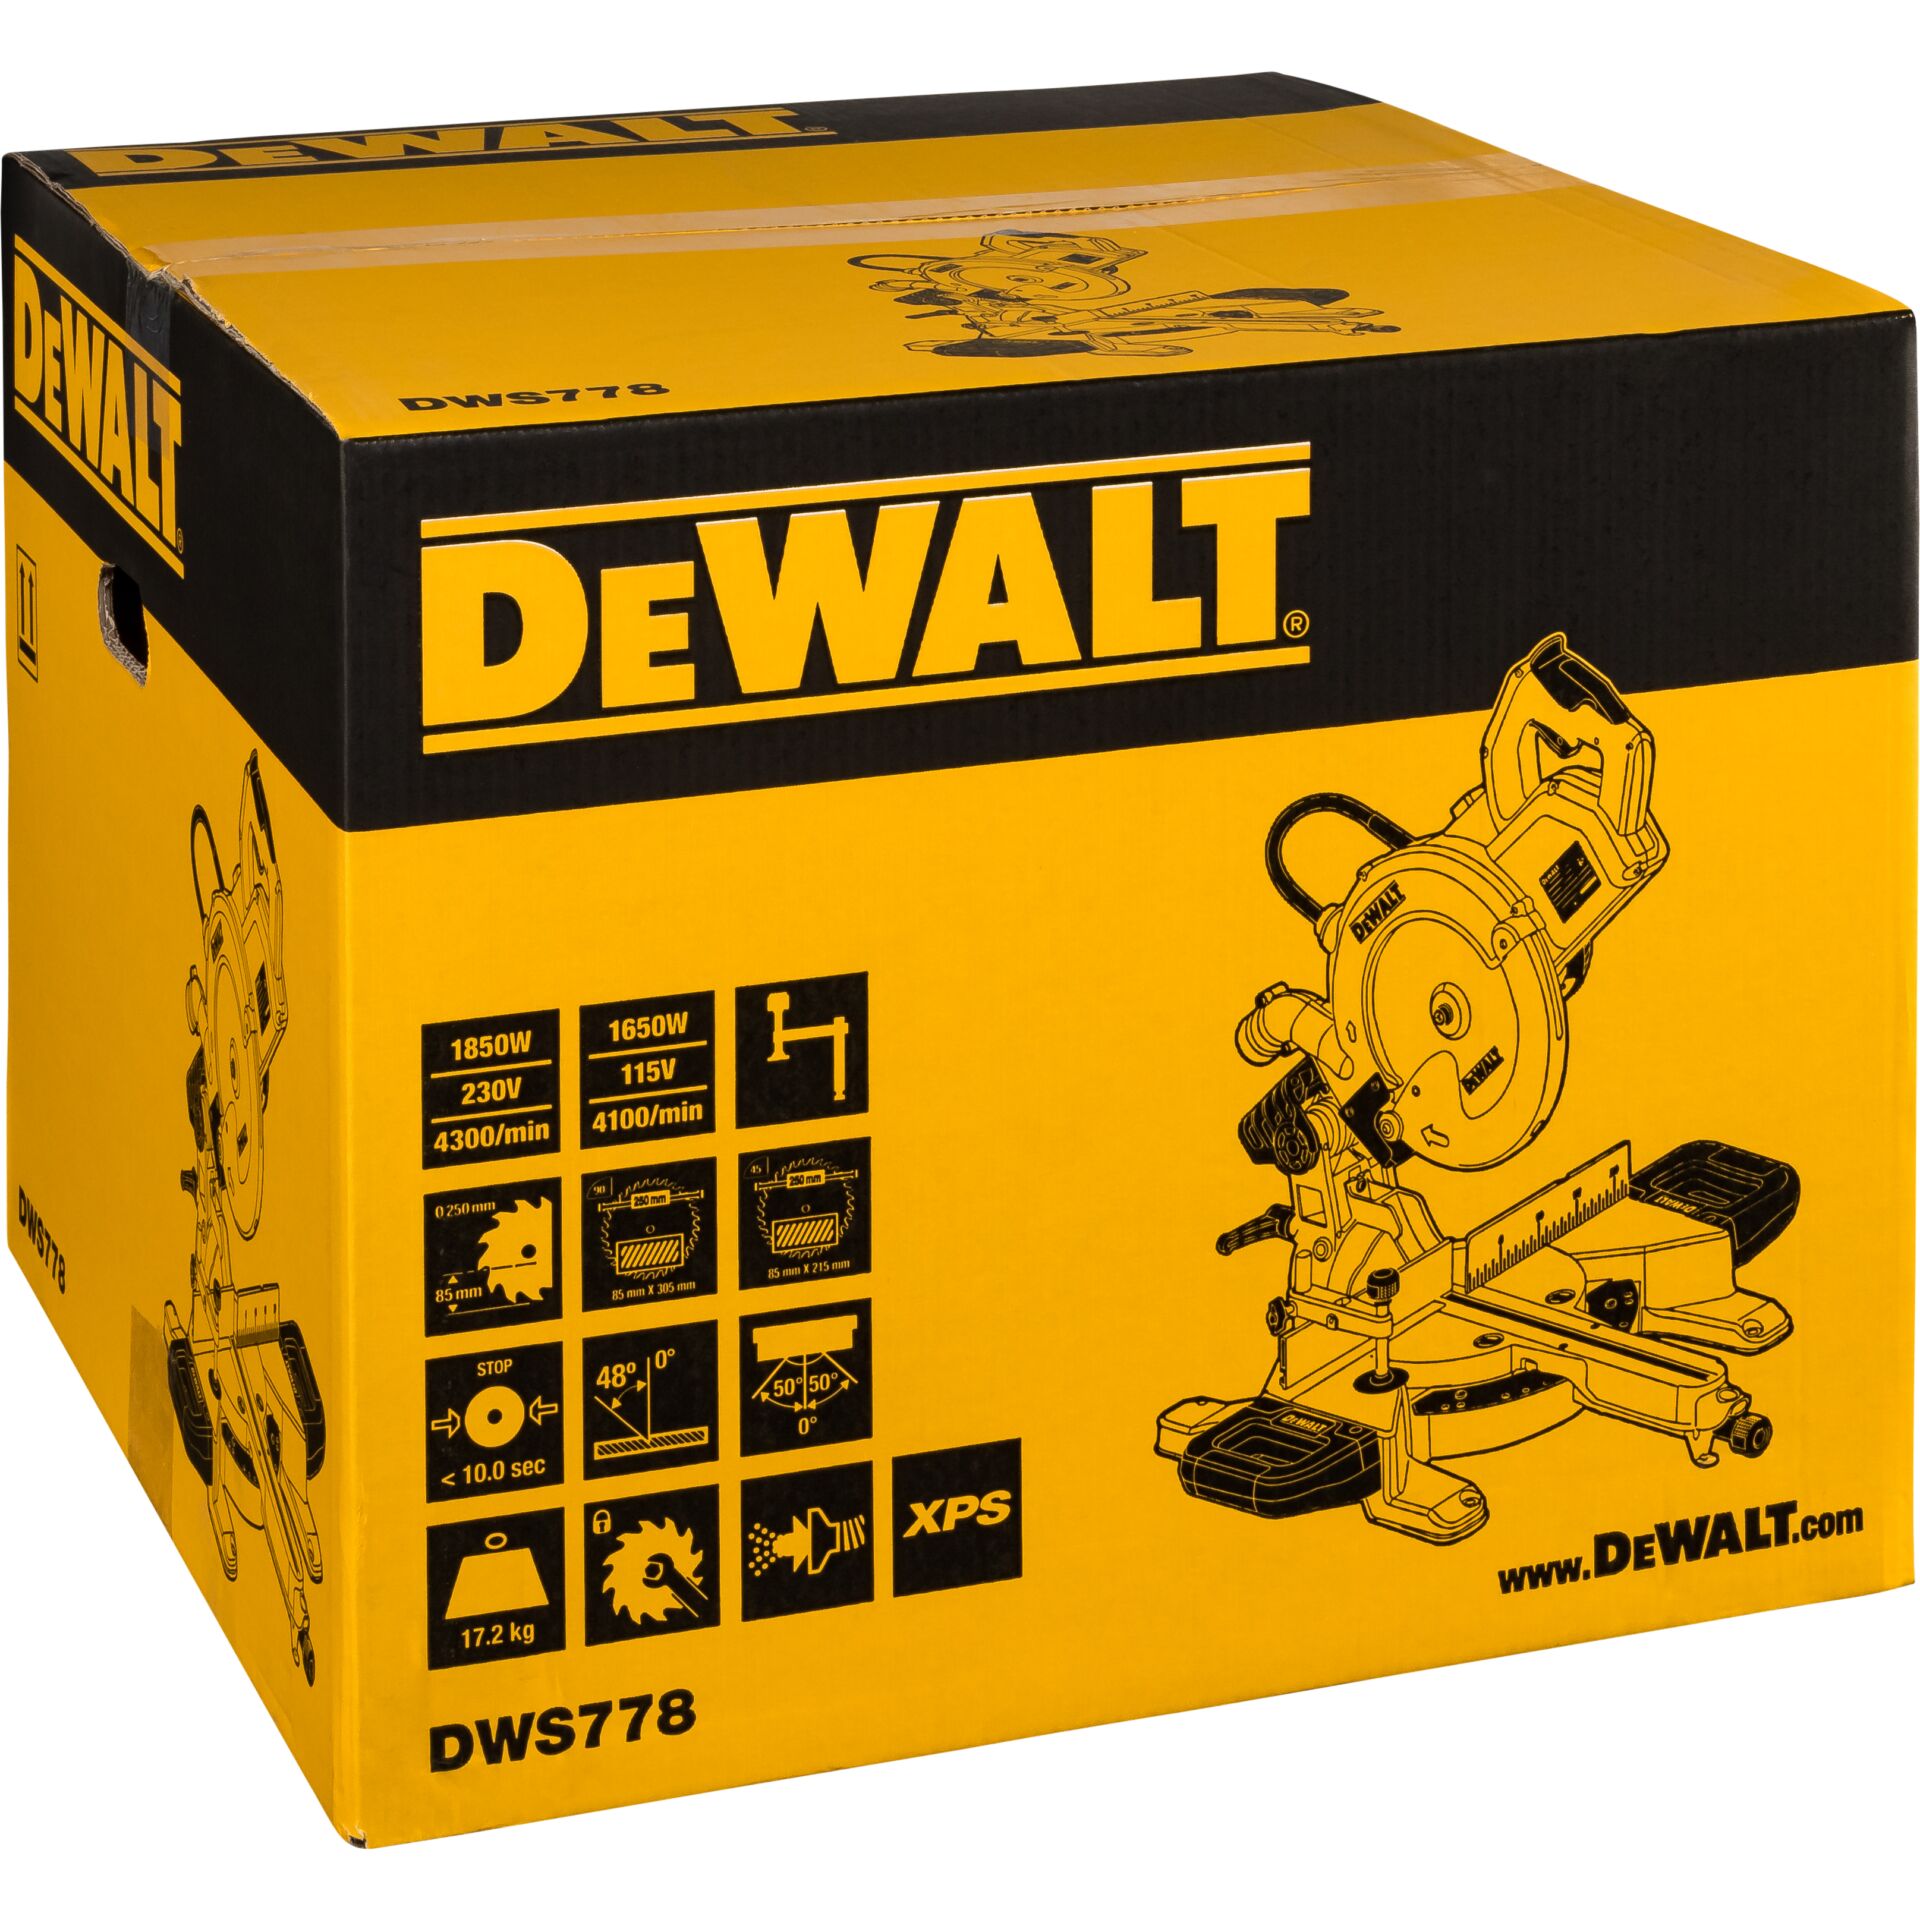 DeWalt DWS778-QS troncatr. rad. 250 mm 1850 Watt